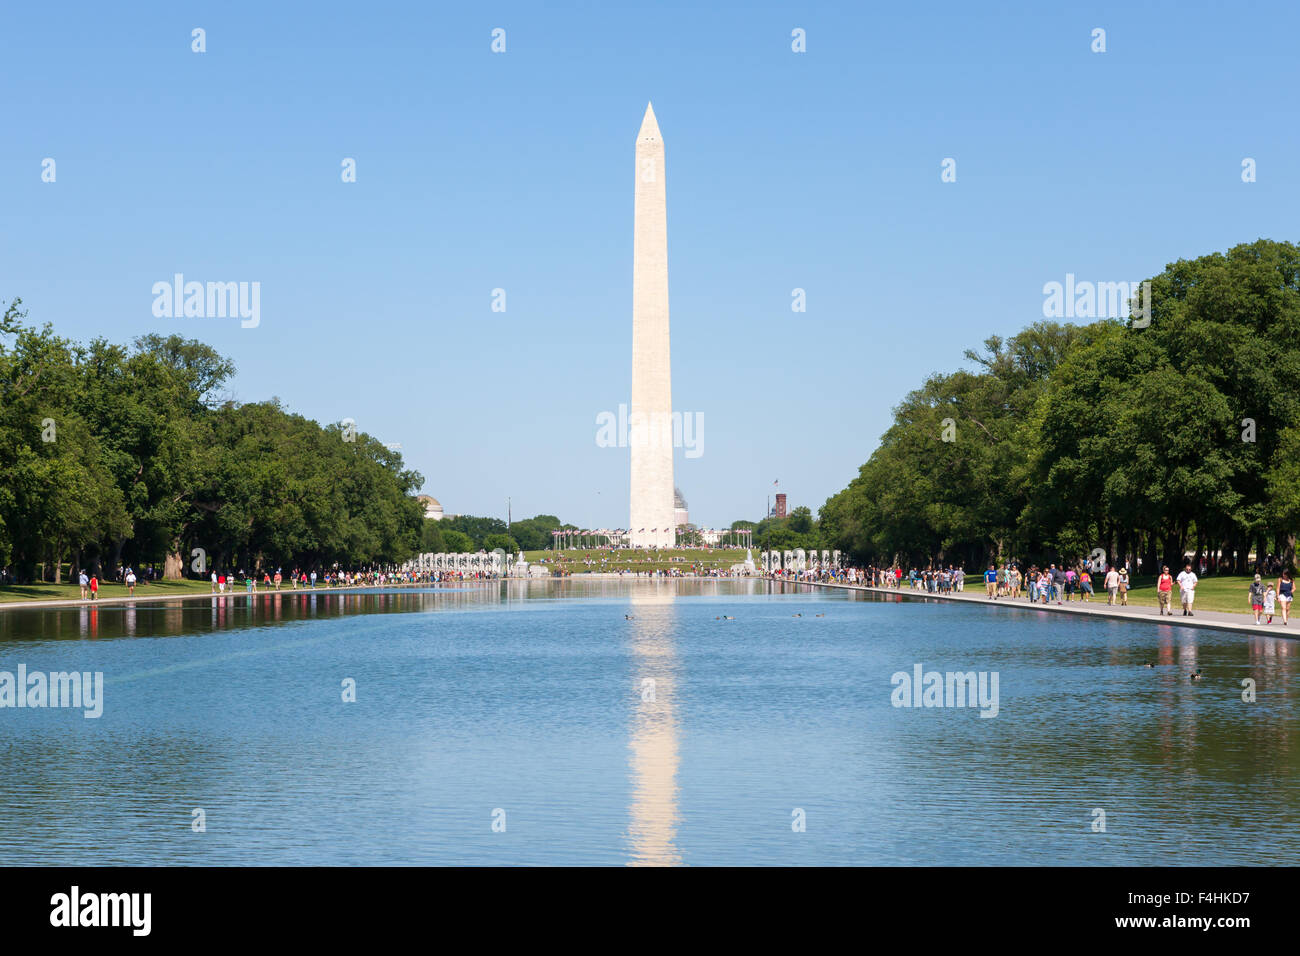 Le Washington Monument reflète dans le Lincoln Memorial Reflecting Pool sur le National Mall à Washington, DC. Banque D'Images